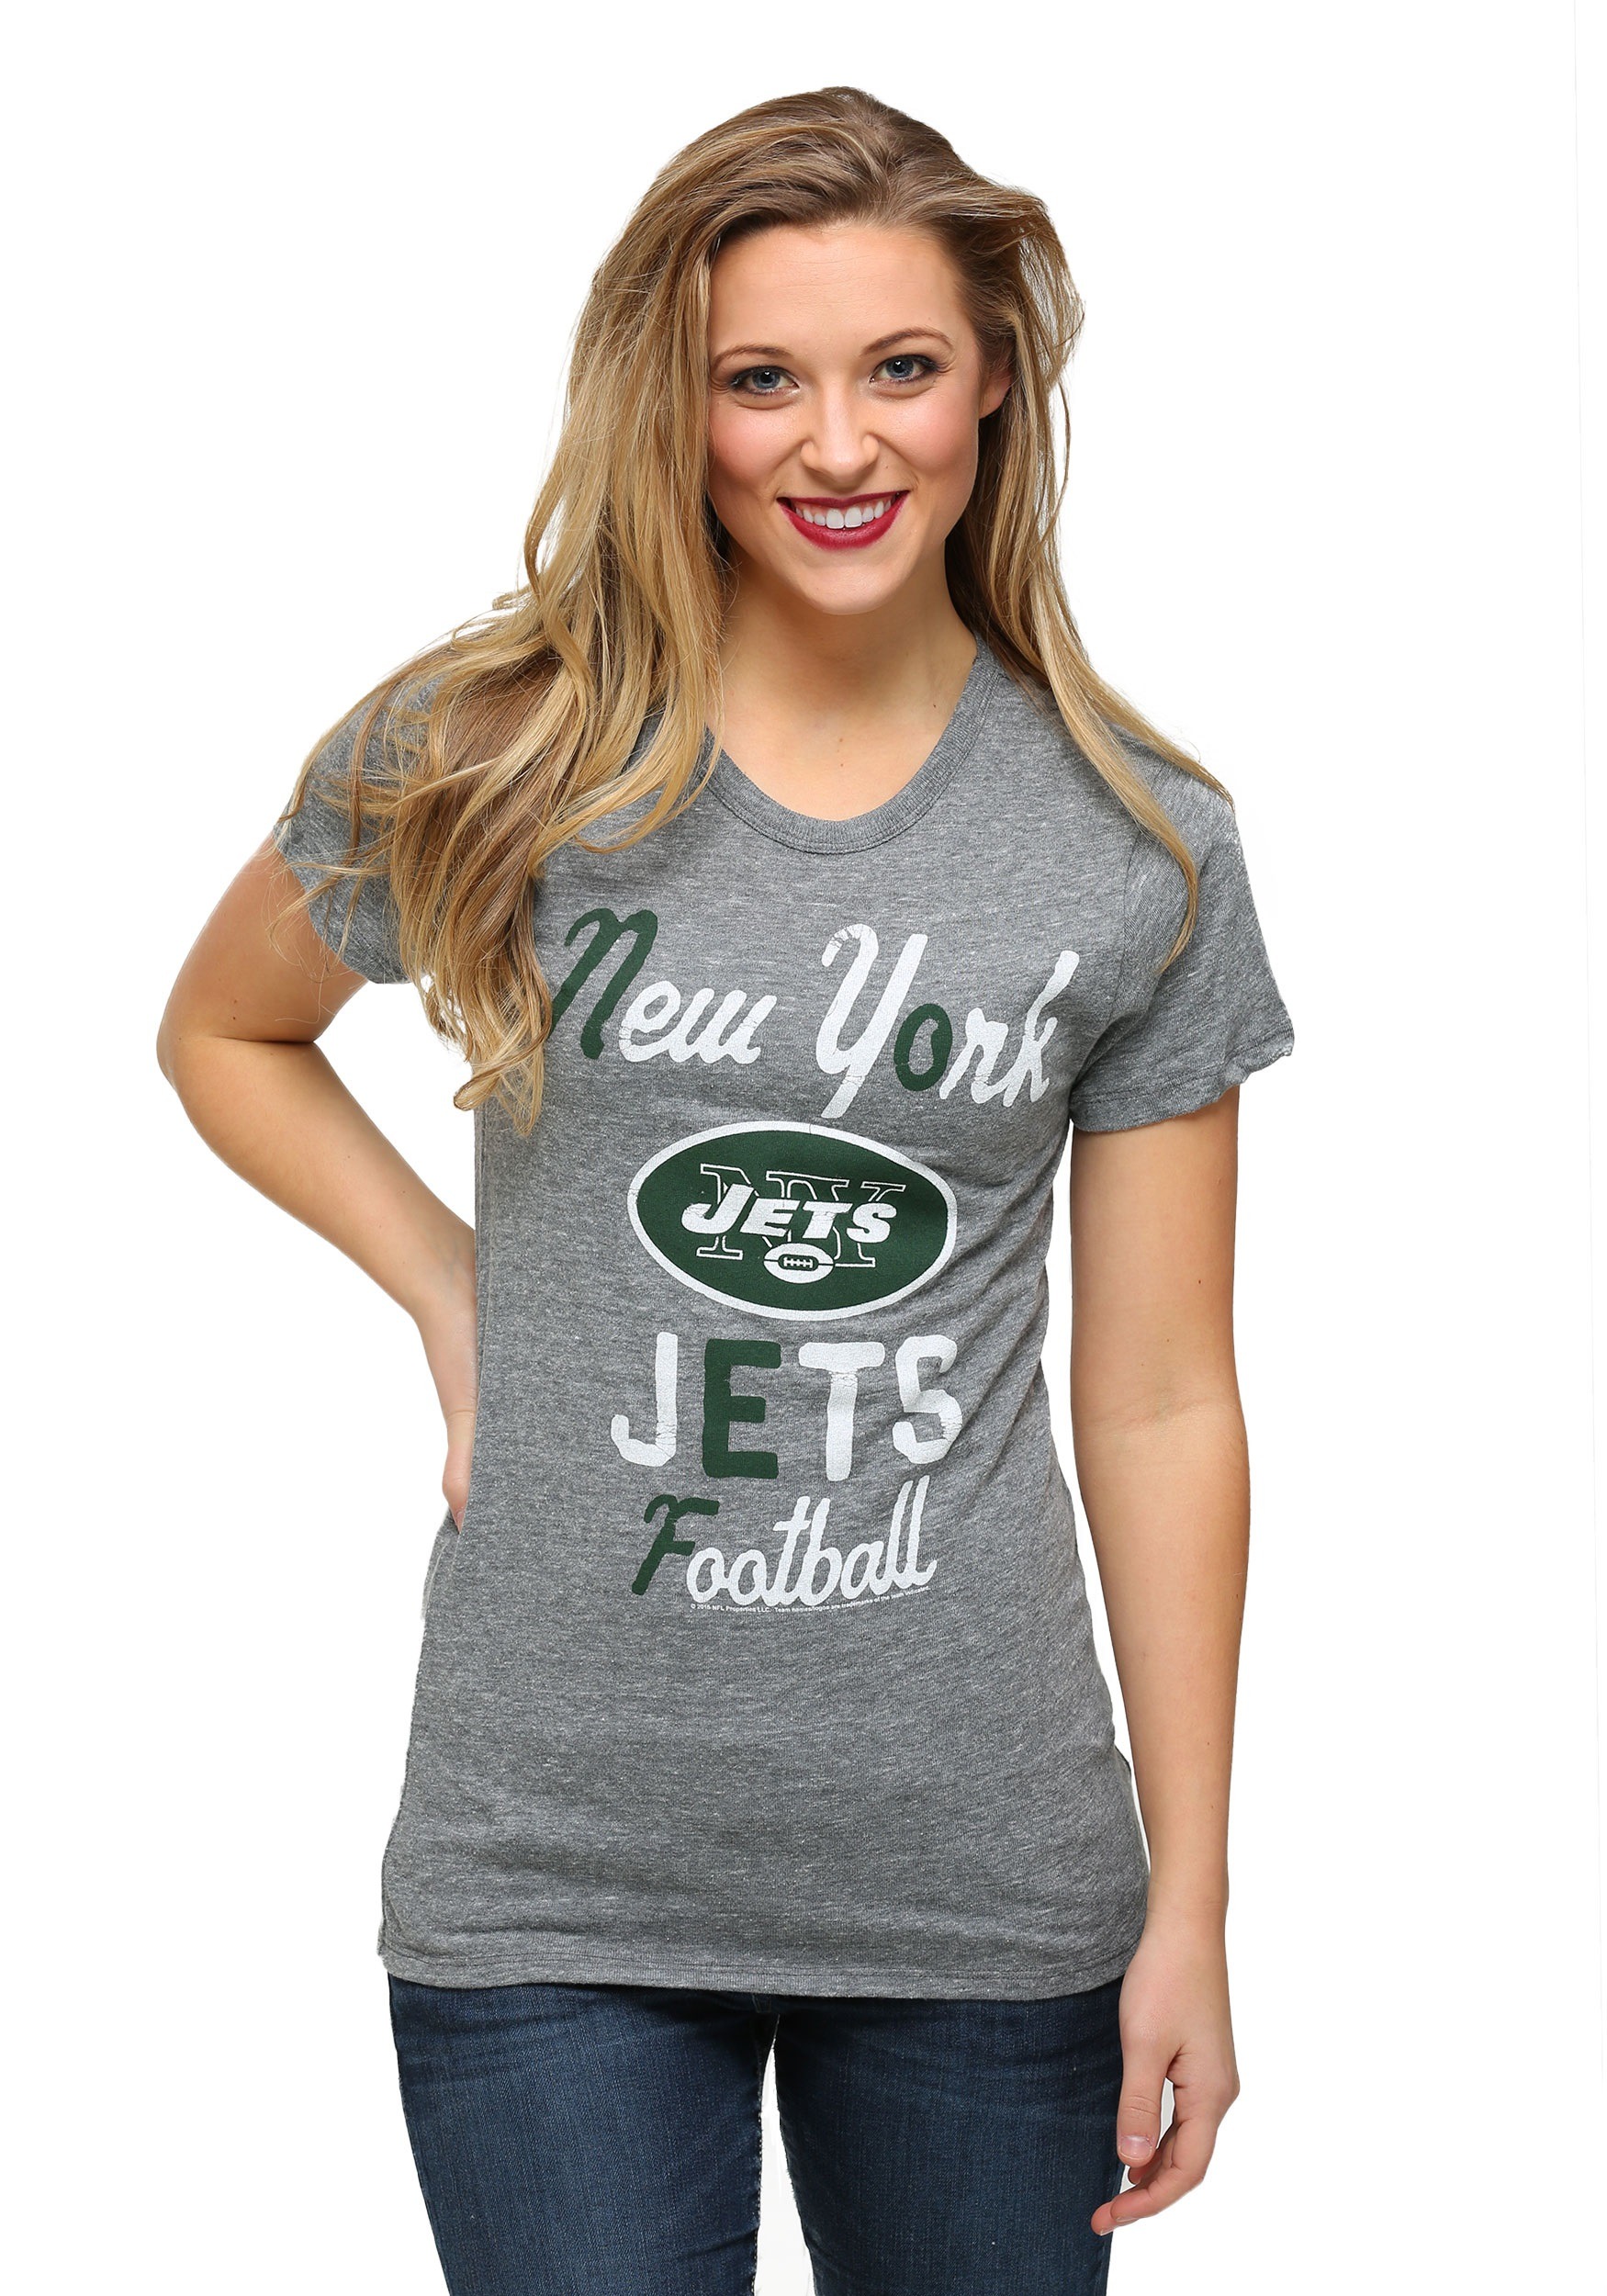 New York Jets Touchdown Tri-Blend Womens T-Shirt